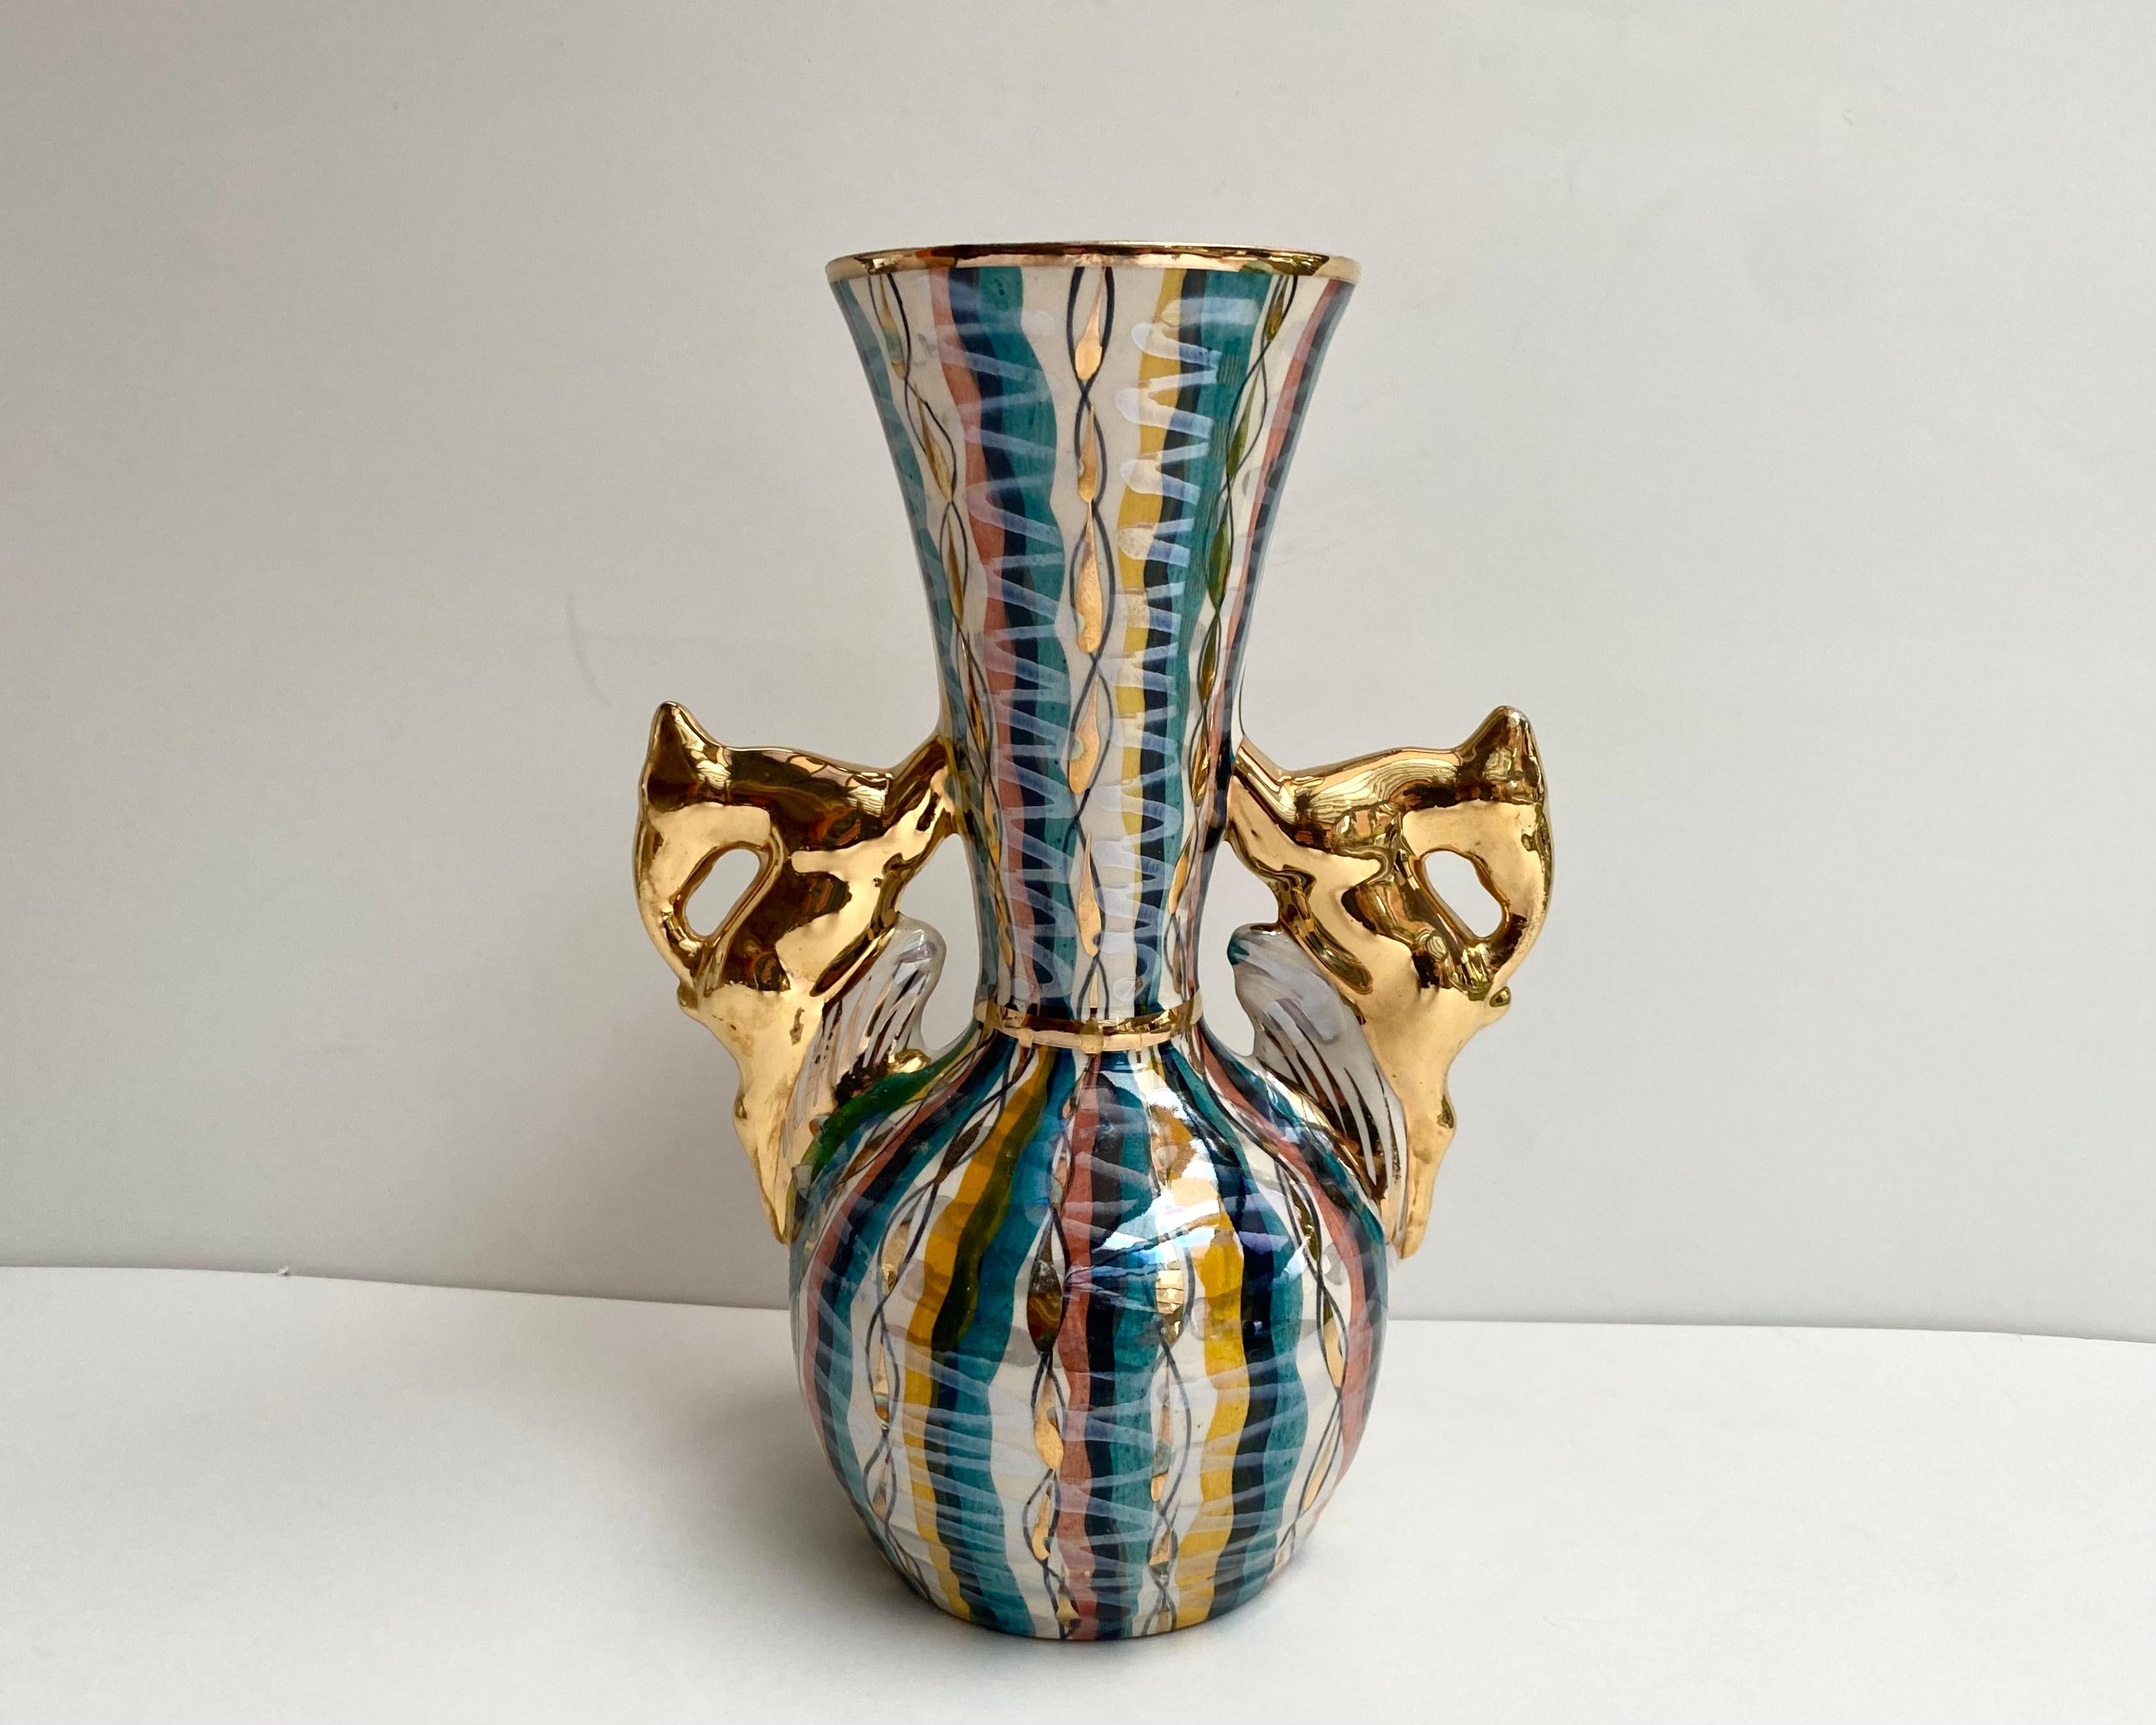 Vintage vase rare de belle forme avec des figures de cerfs à la place des poignées de la célèbre marque belge H. Bequet. 

Fabriqué dans les années 1960.

Magnifique palette de couleurs utilisant des émaux de nacre et des plaquages d'or